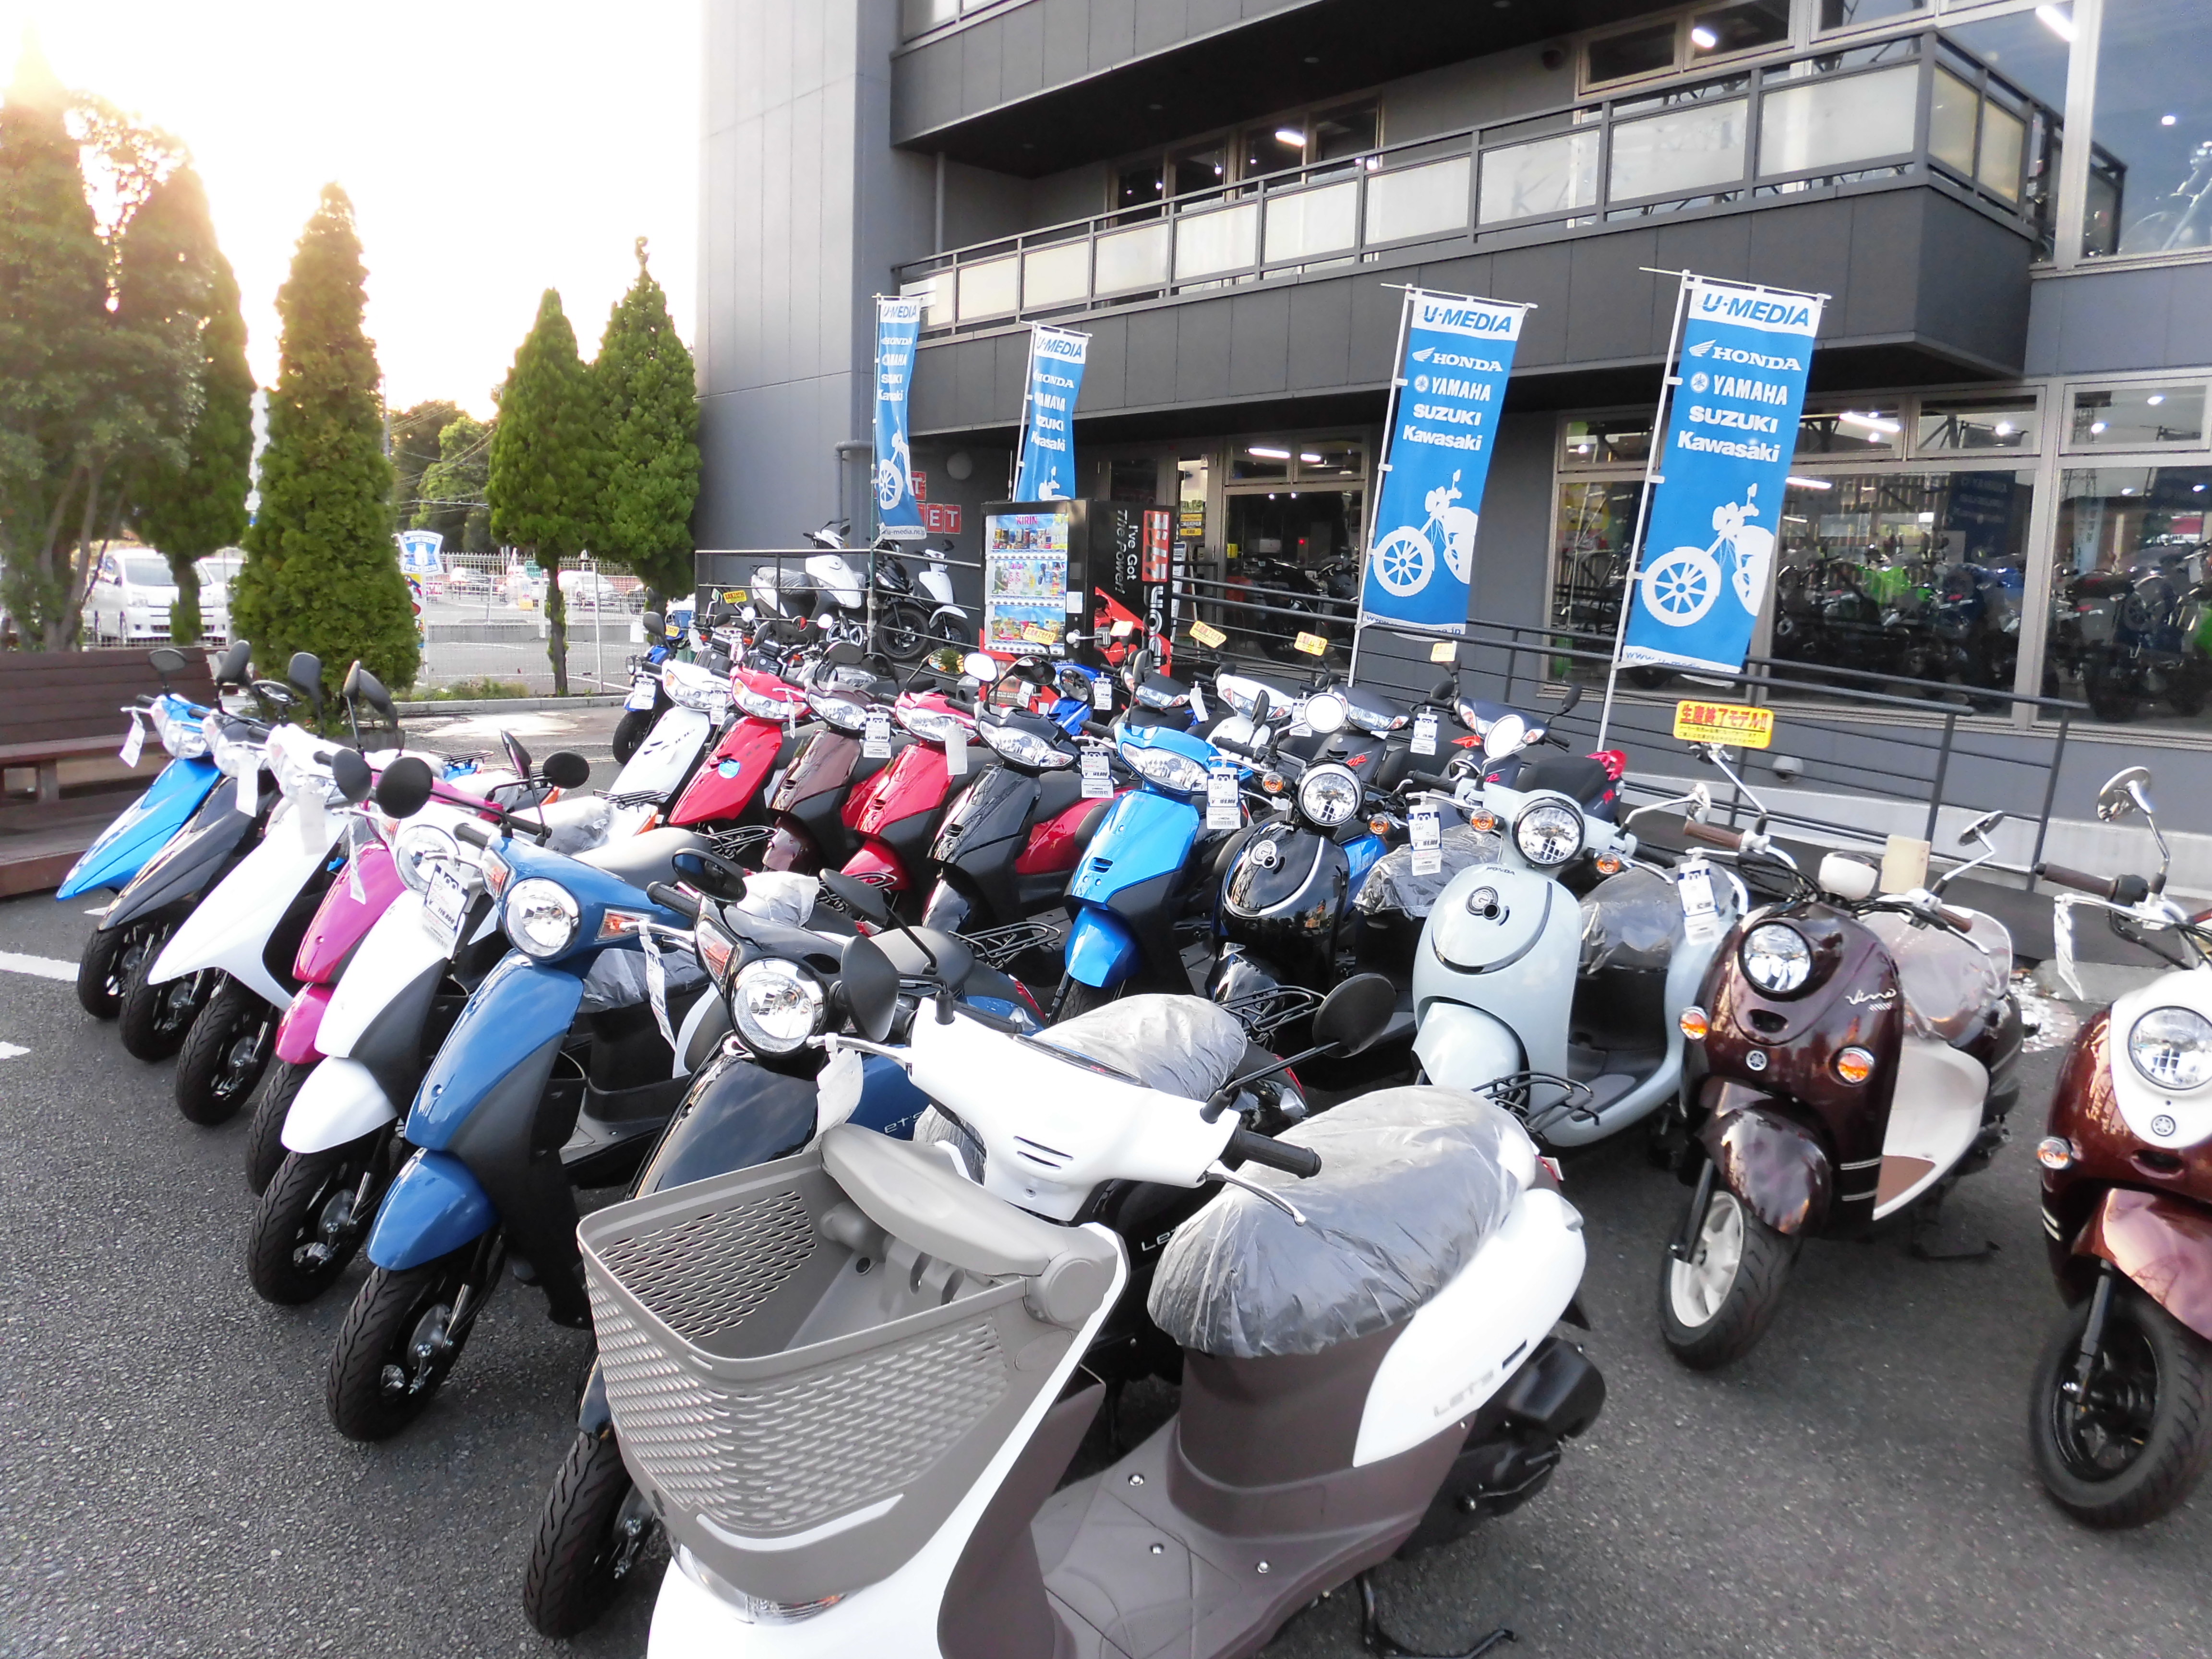 原付バイクもあります 最新情報 U Media ユーメディア 中古バイク 新車バイク探しの決定版 神奈川 東京でバイク 探すならユーメディア